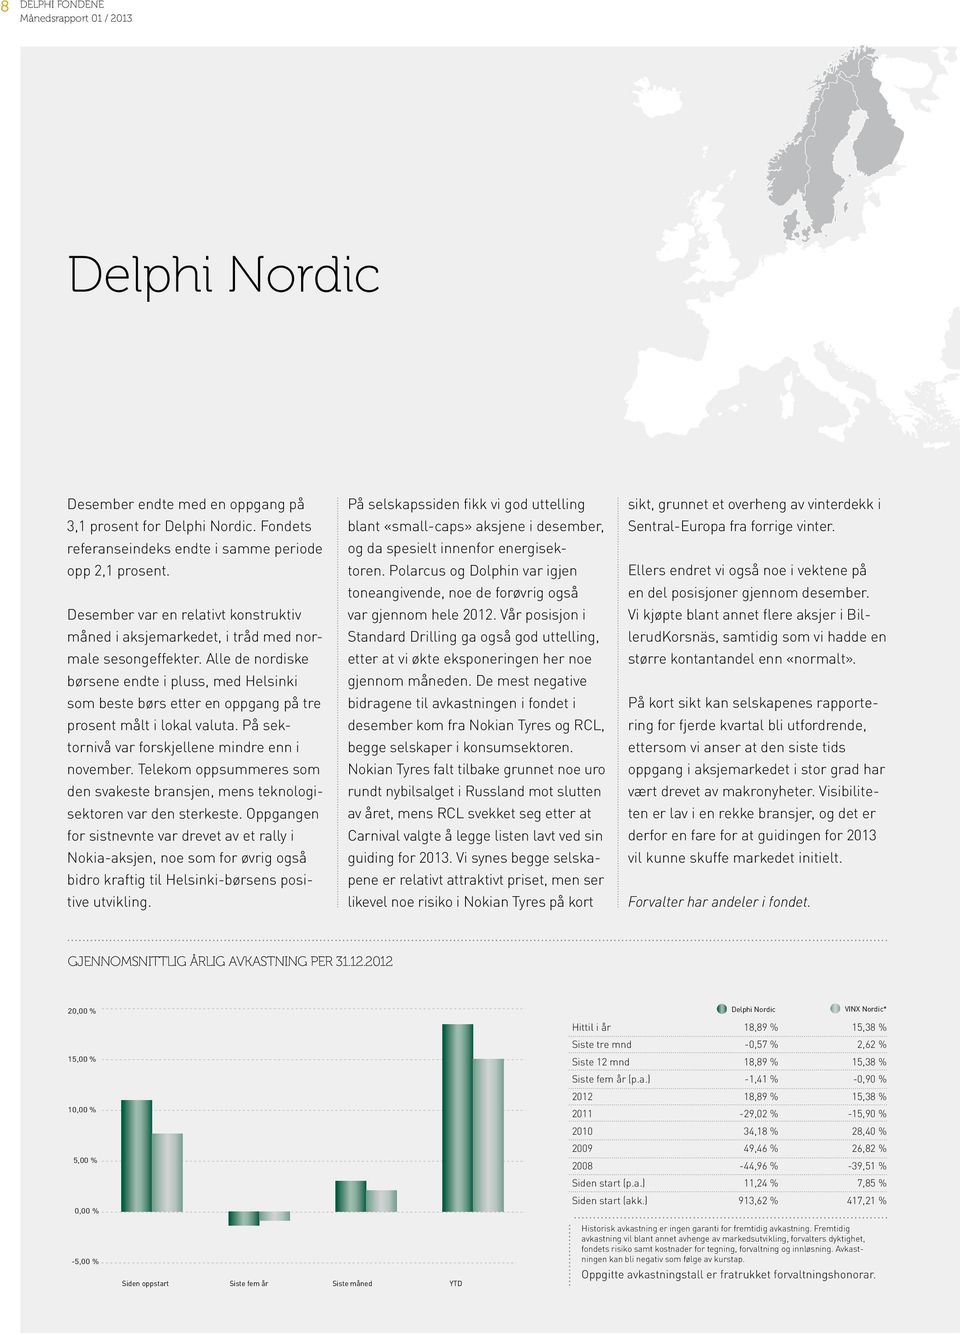 Alle de nordiske børsene endte i pluss, med Helsinki som beste børs etter en oppgang på tre prosent målt i lokal valuta. På sektornivå var forskjellene mindre enn i november.